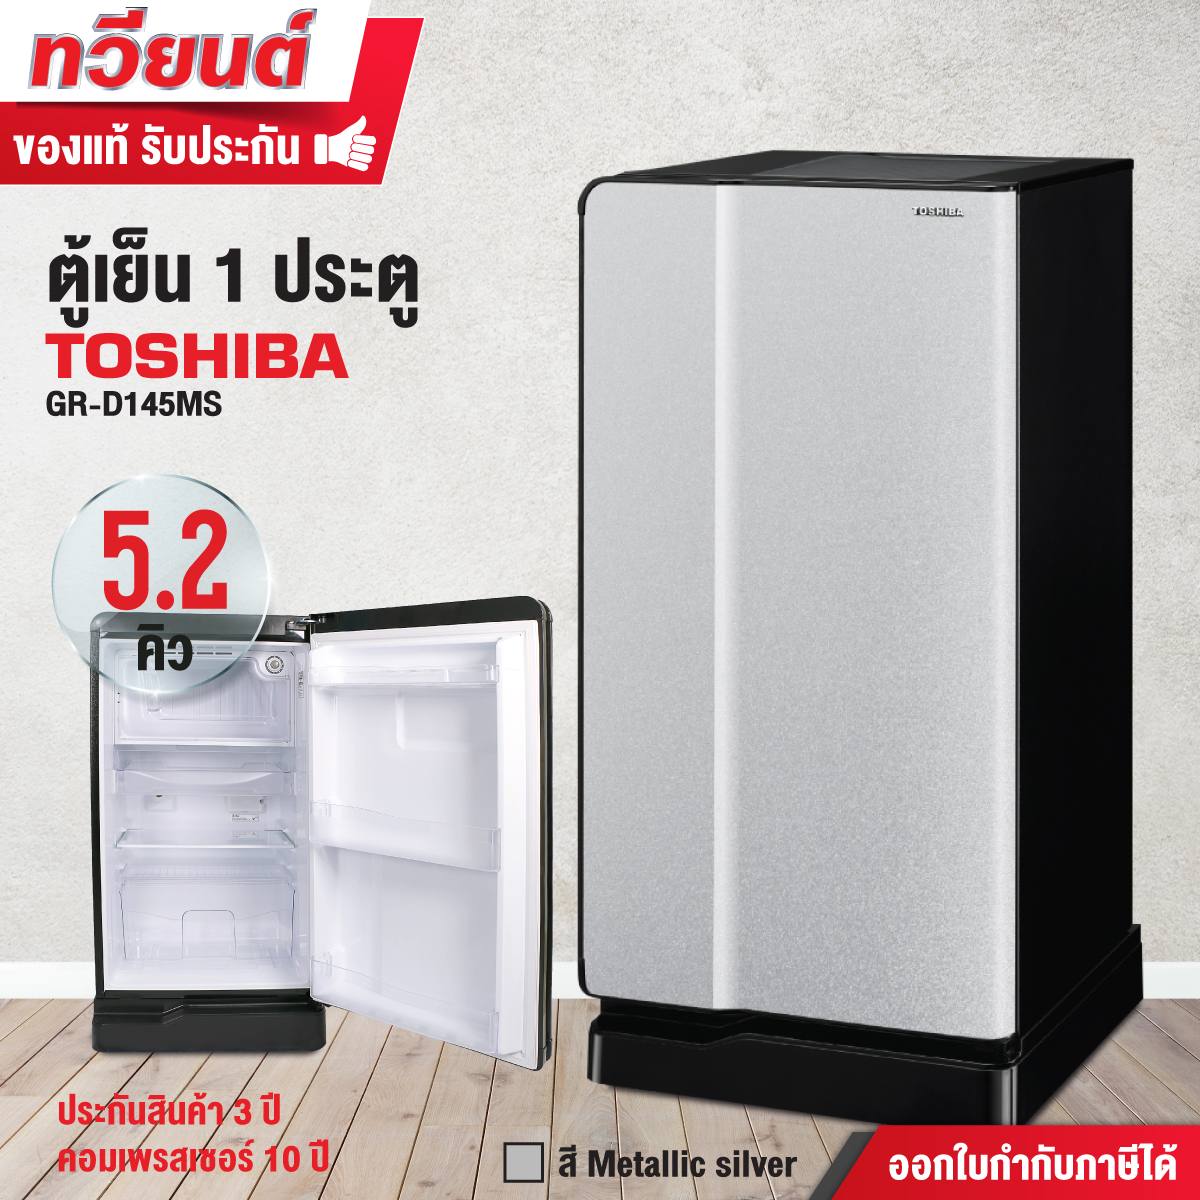 ตู้เย็น Toshiba รุ่น GR-D145 ขนาด 5 คิว รับประกันสินค้า 3 ปี คอมเพรสเชอร์ 10 ปี